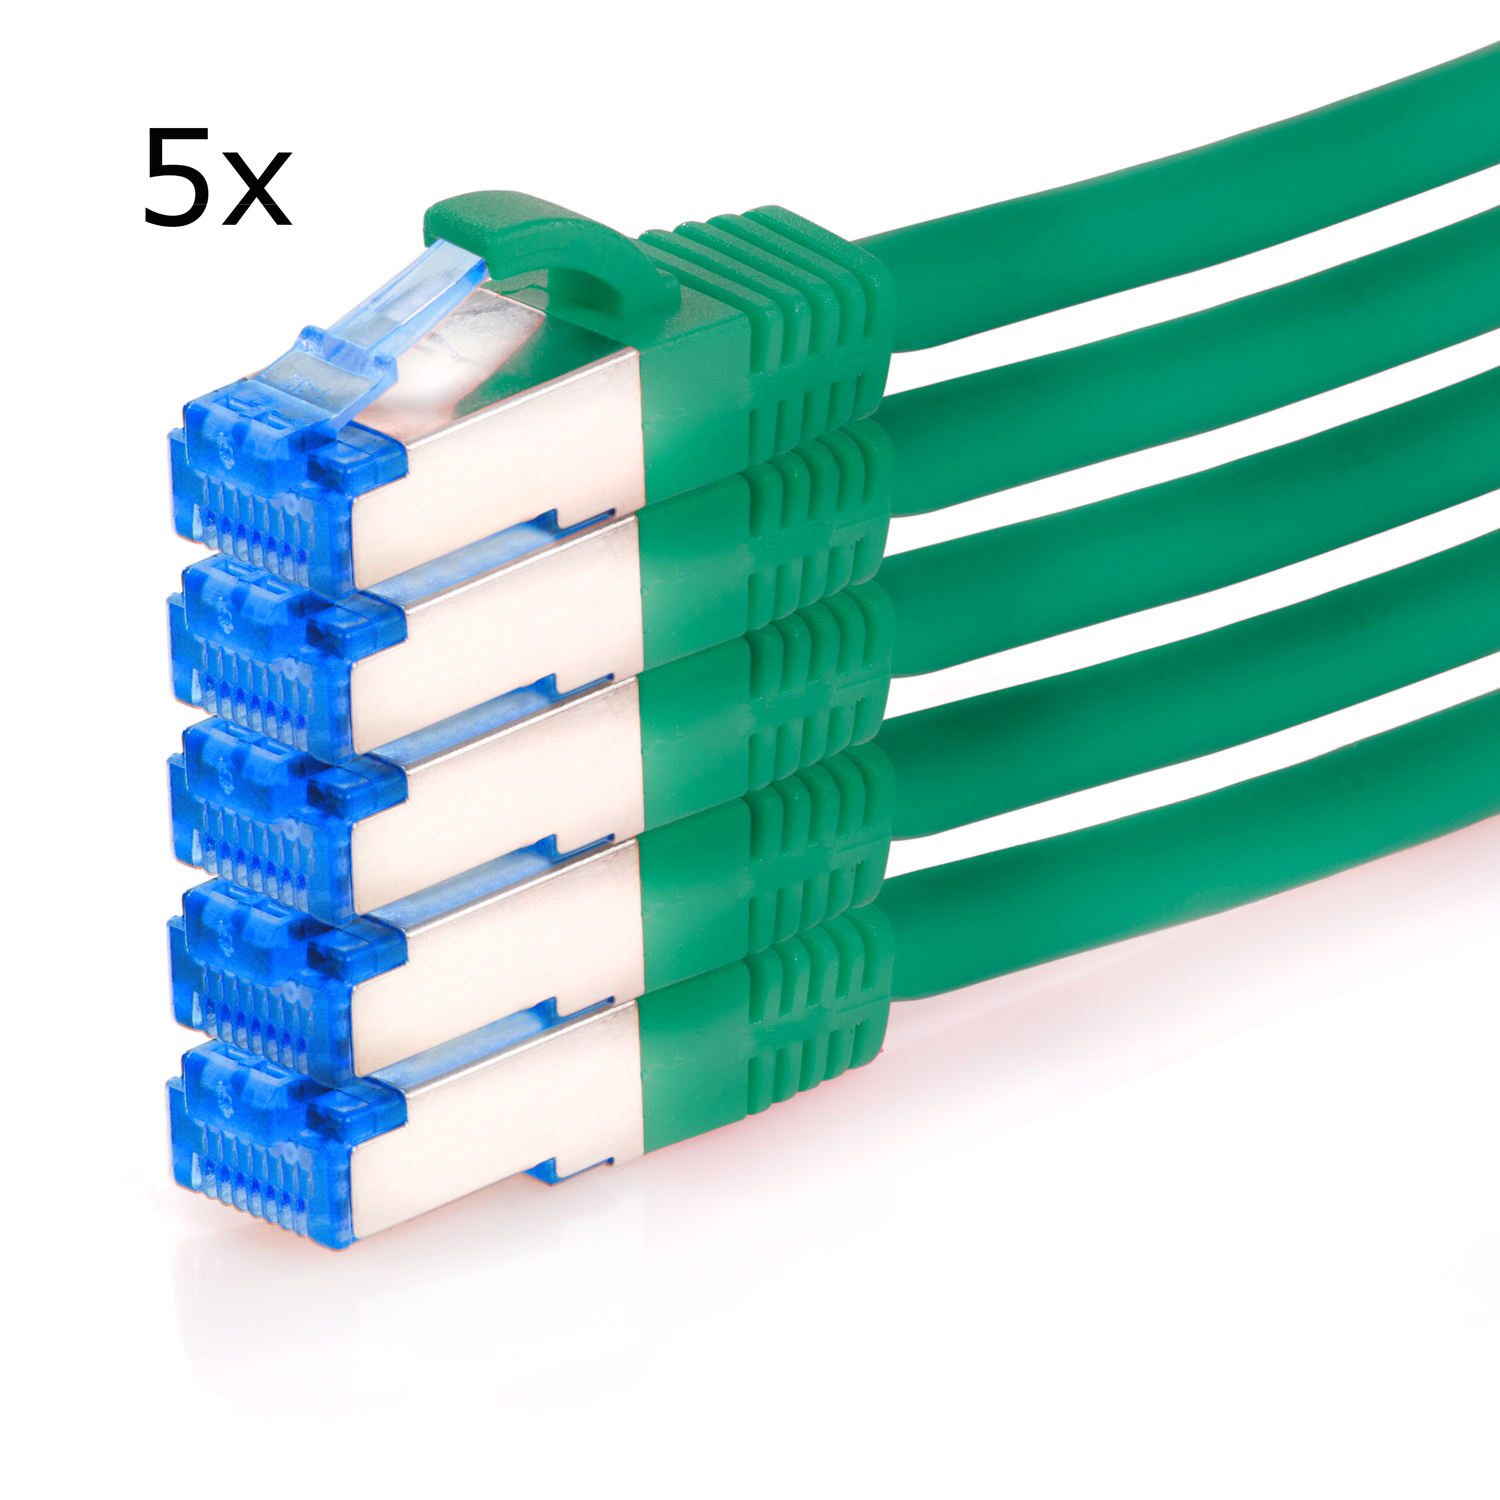 TPFNET 5er / m grün, S/FTP 2 2m 10GBit, Pack Patchkabel Netzwerkkabel Netzwerkkabel